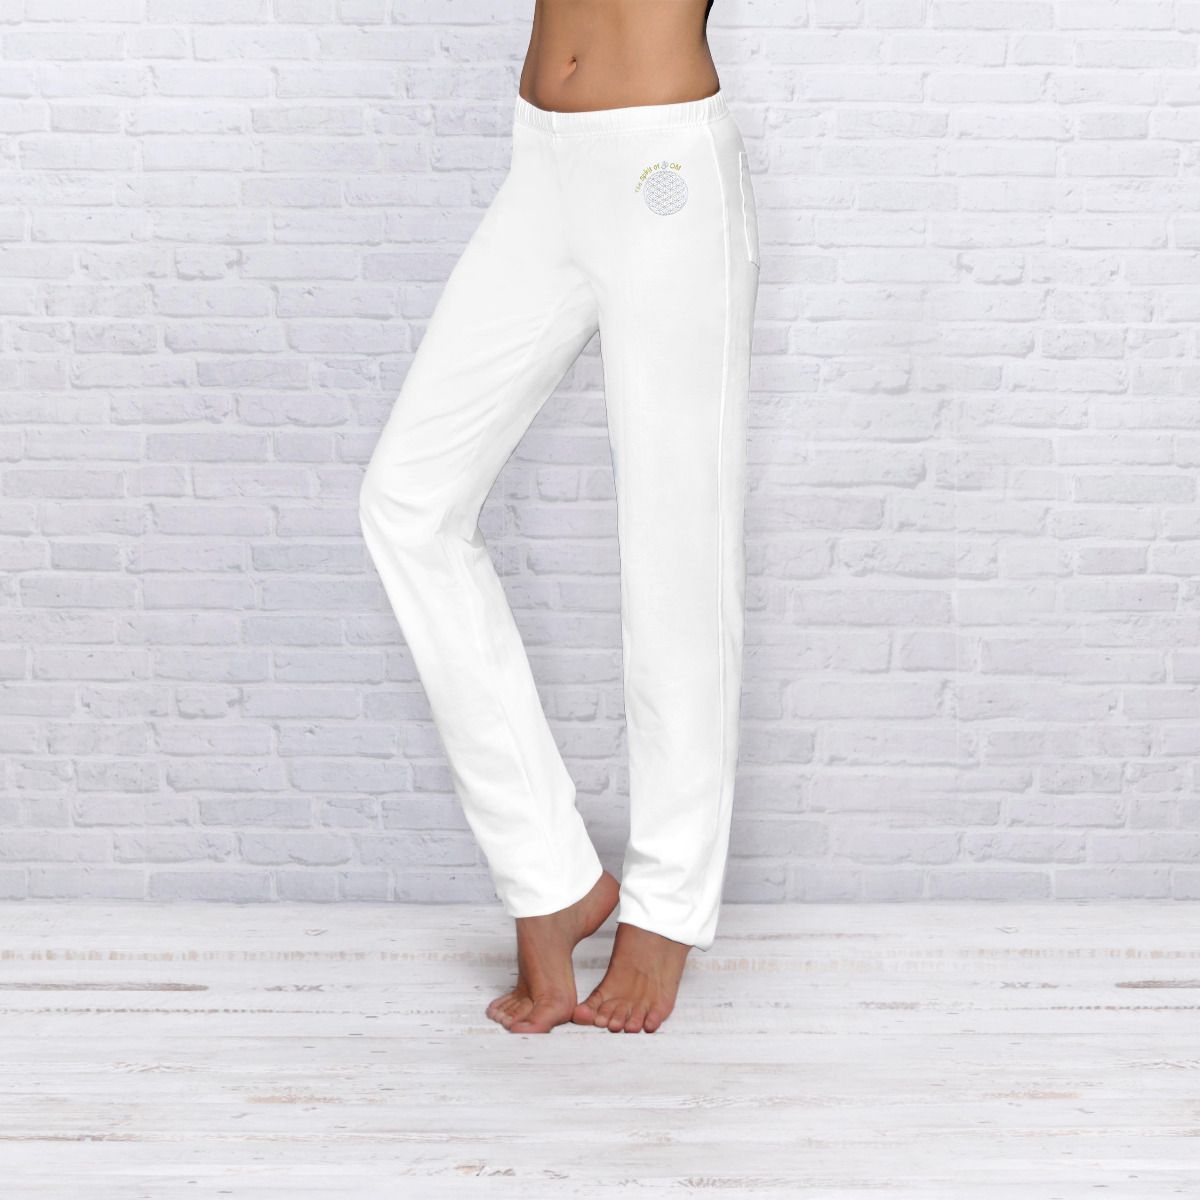 The Spirit of OM wellness kalhoty z bio bavlny dlouhé unisex - bílé Velikost: S